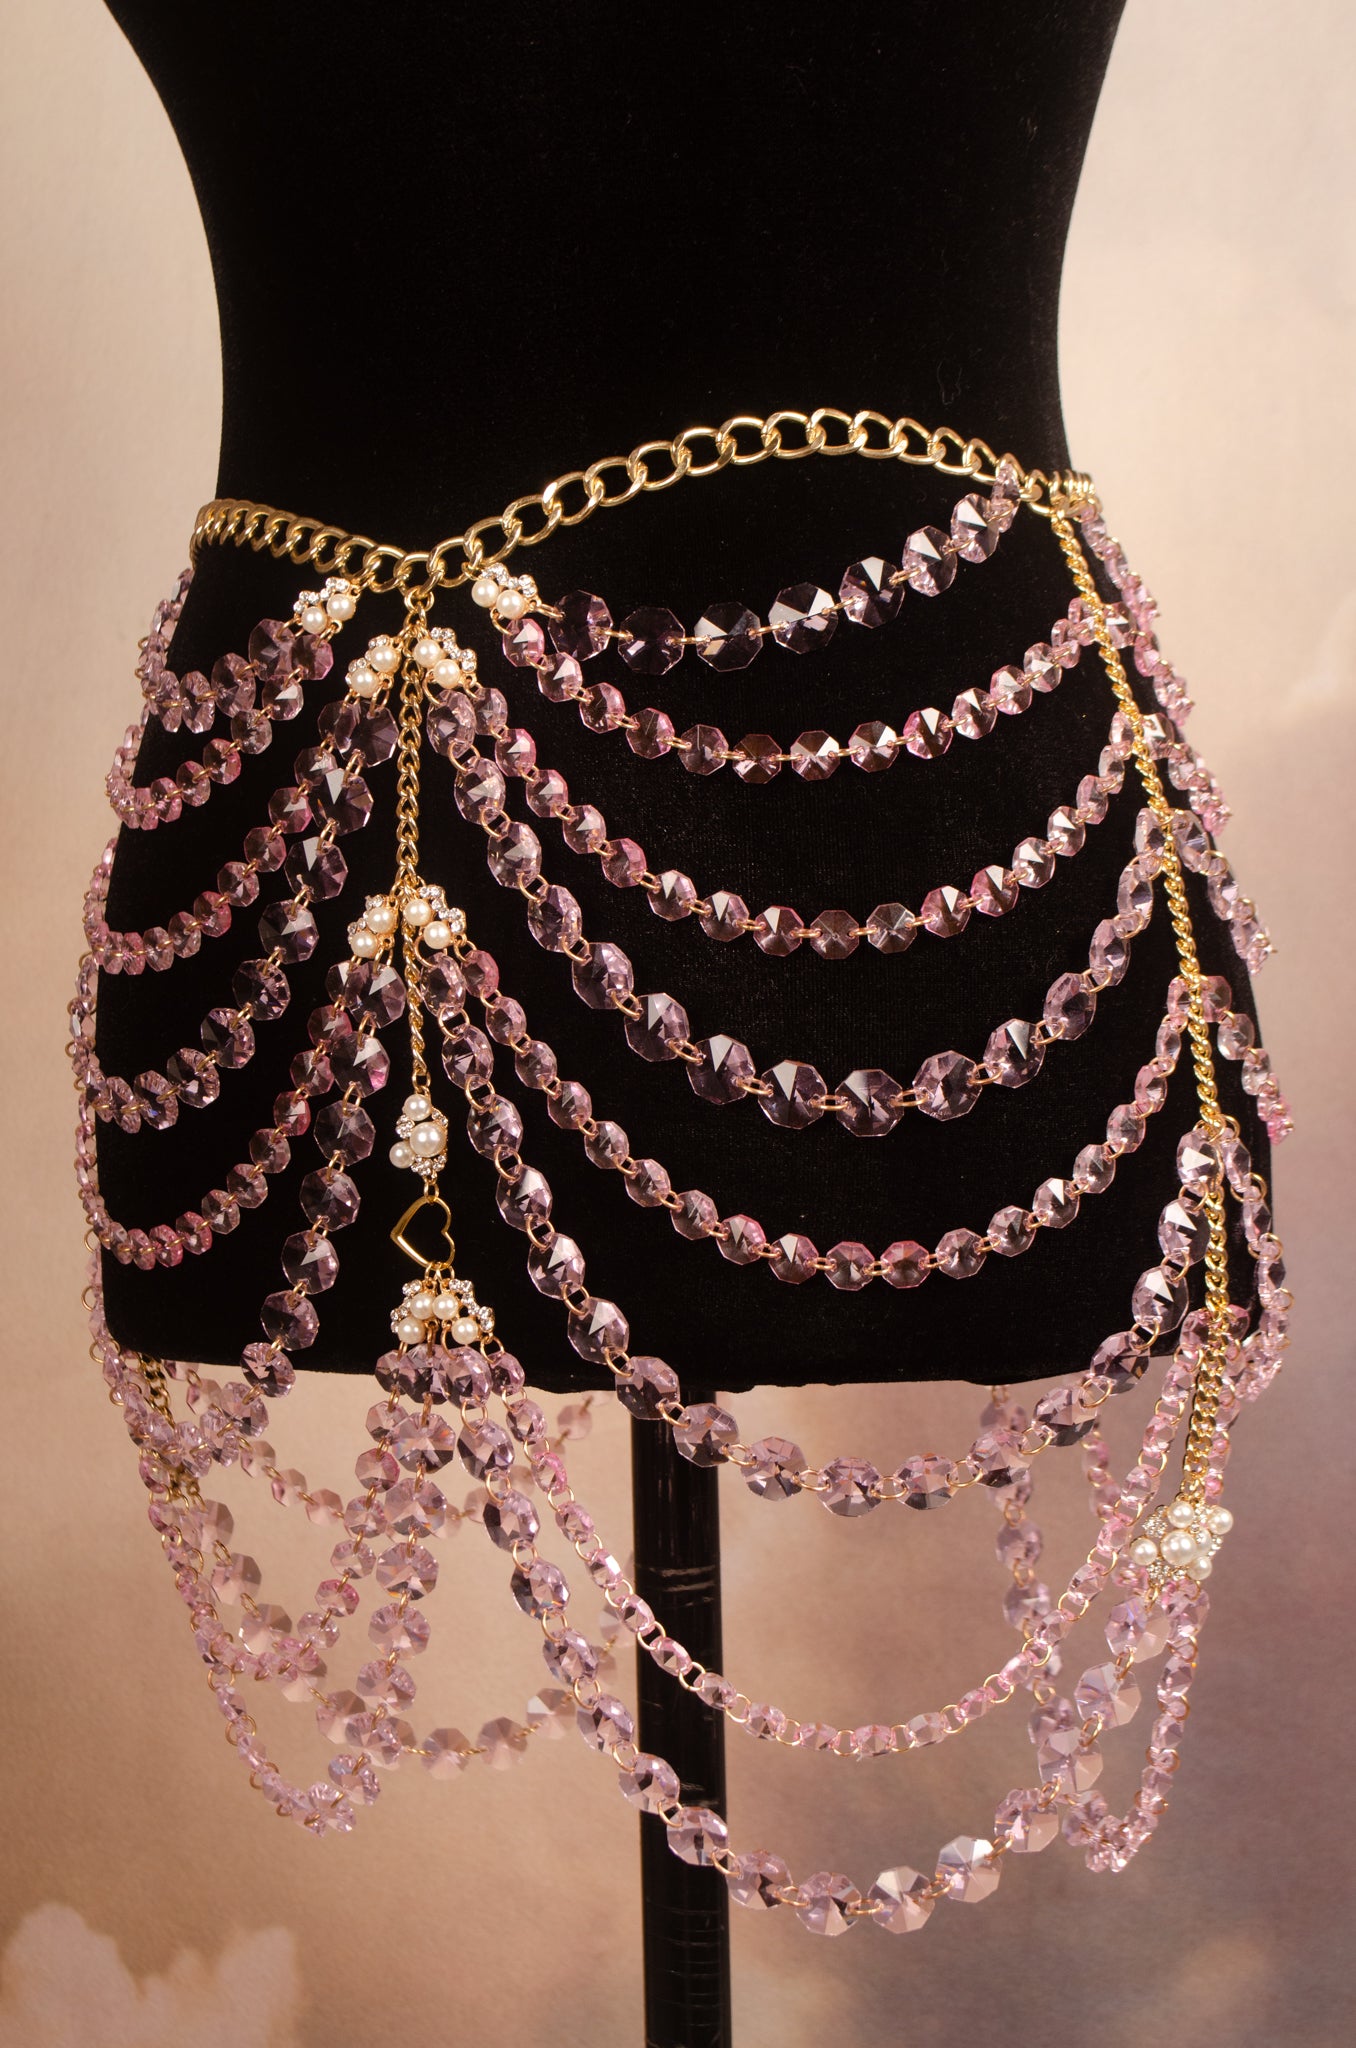 The Antoinette Crystal Skirt